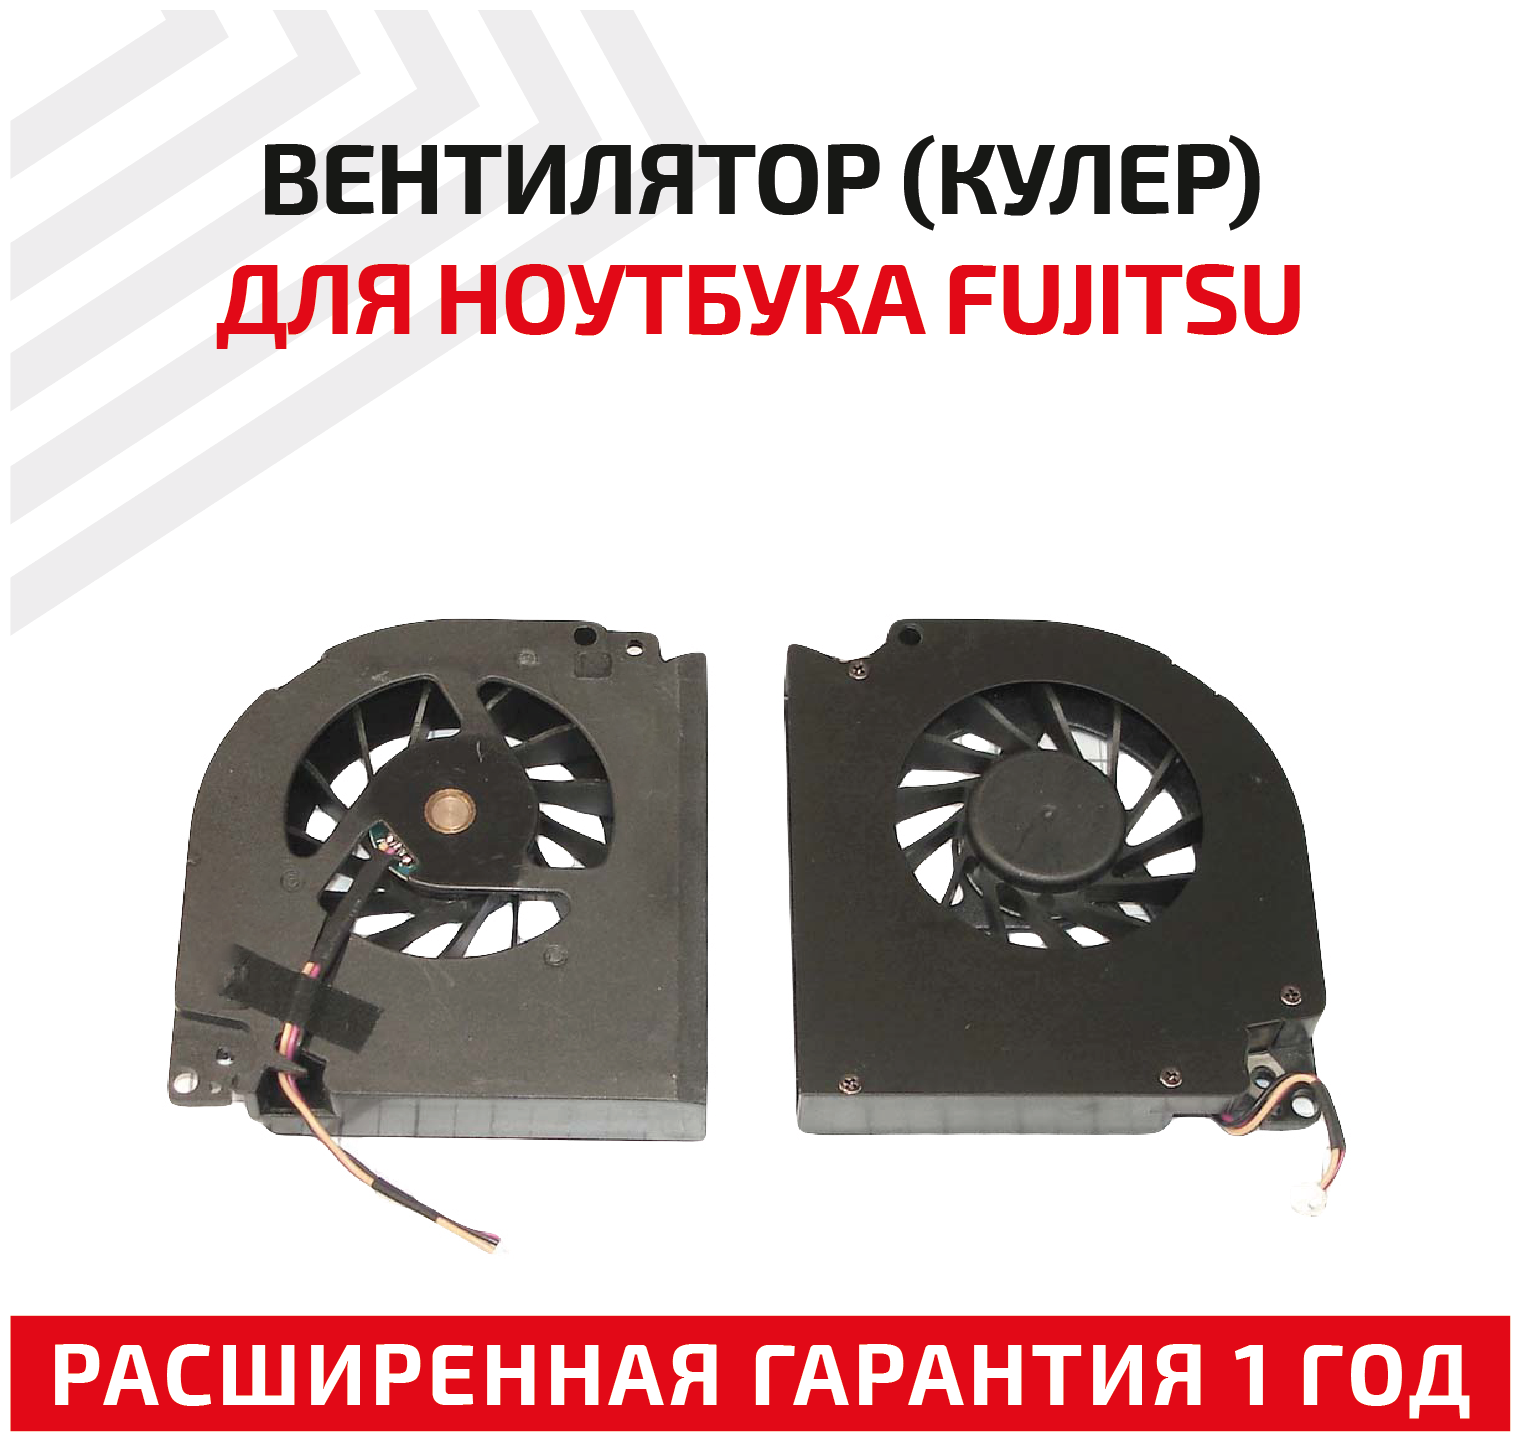 Вентилятор (кулер) для ноутбука Fujitsu Amilo PA3515 PA3553 XA3530 Aspire 5930 7000 9300 5930G 7100 7103 Extensa 5460 5620 5210 5220